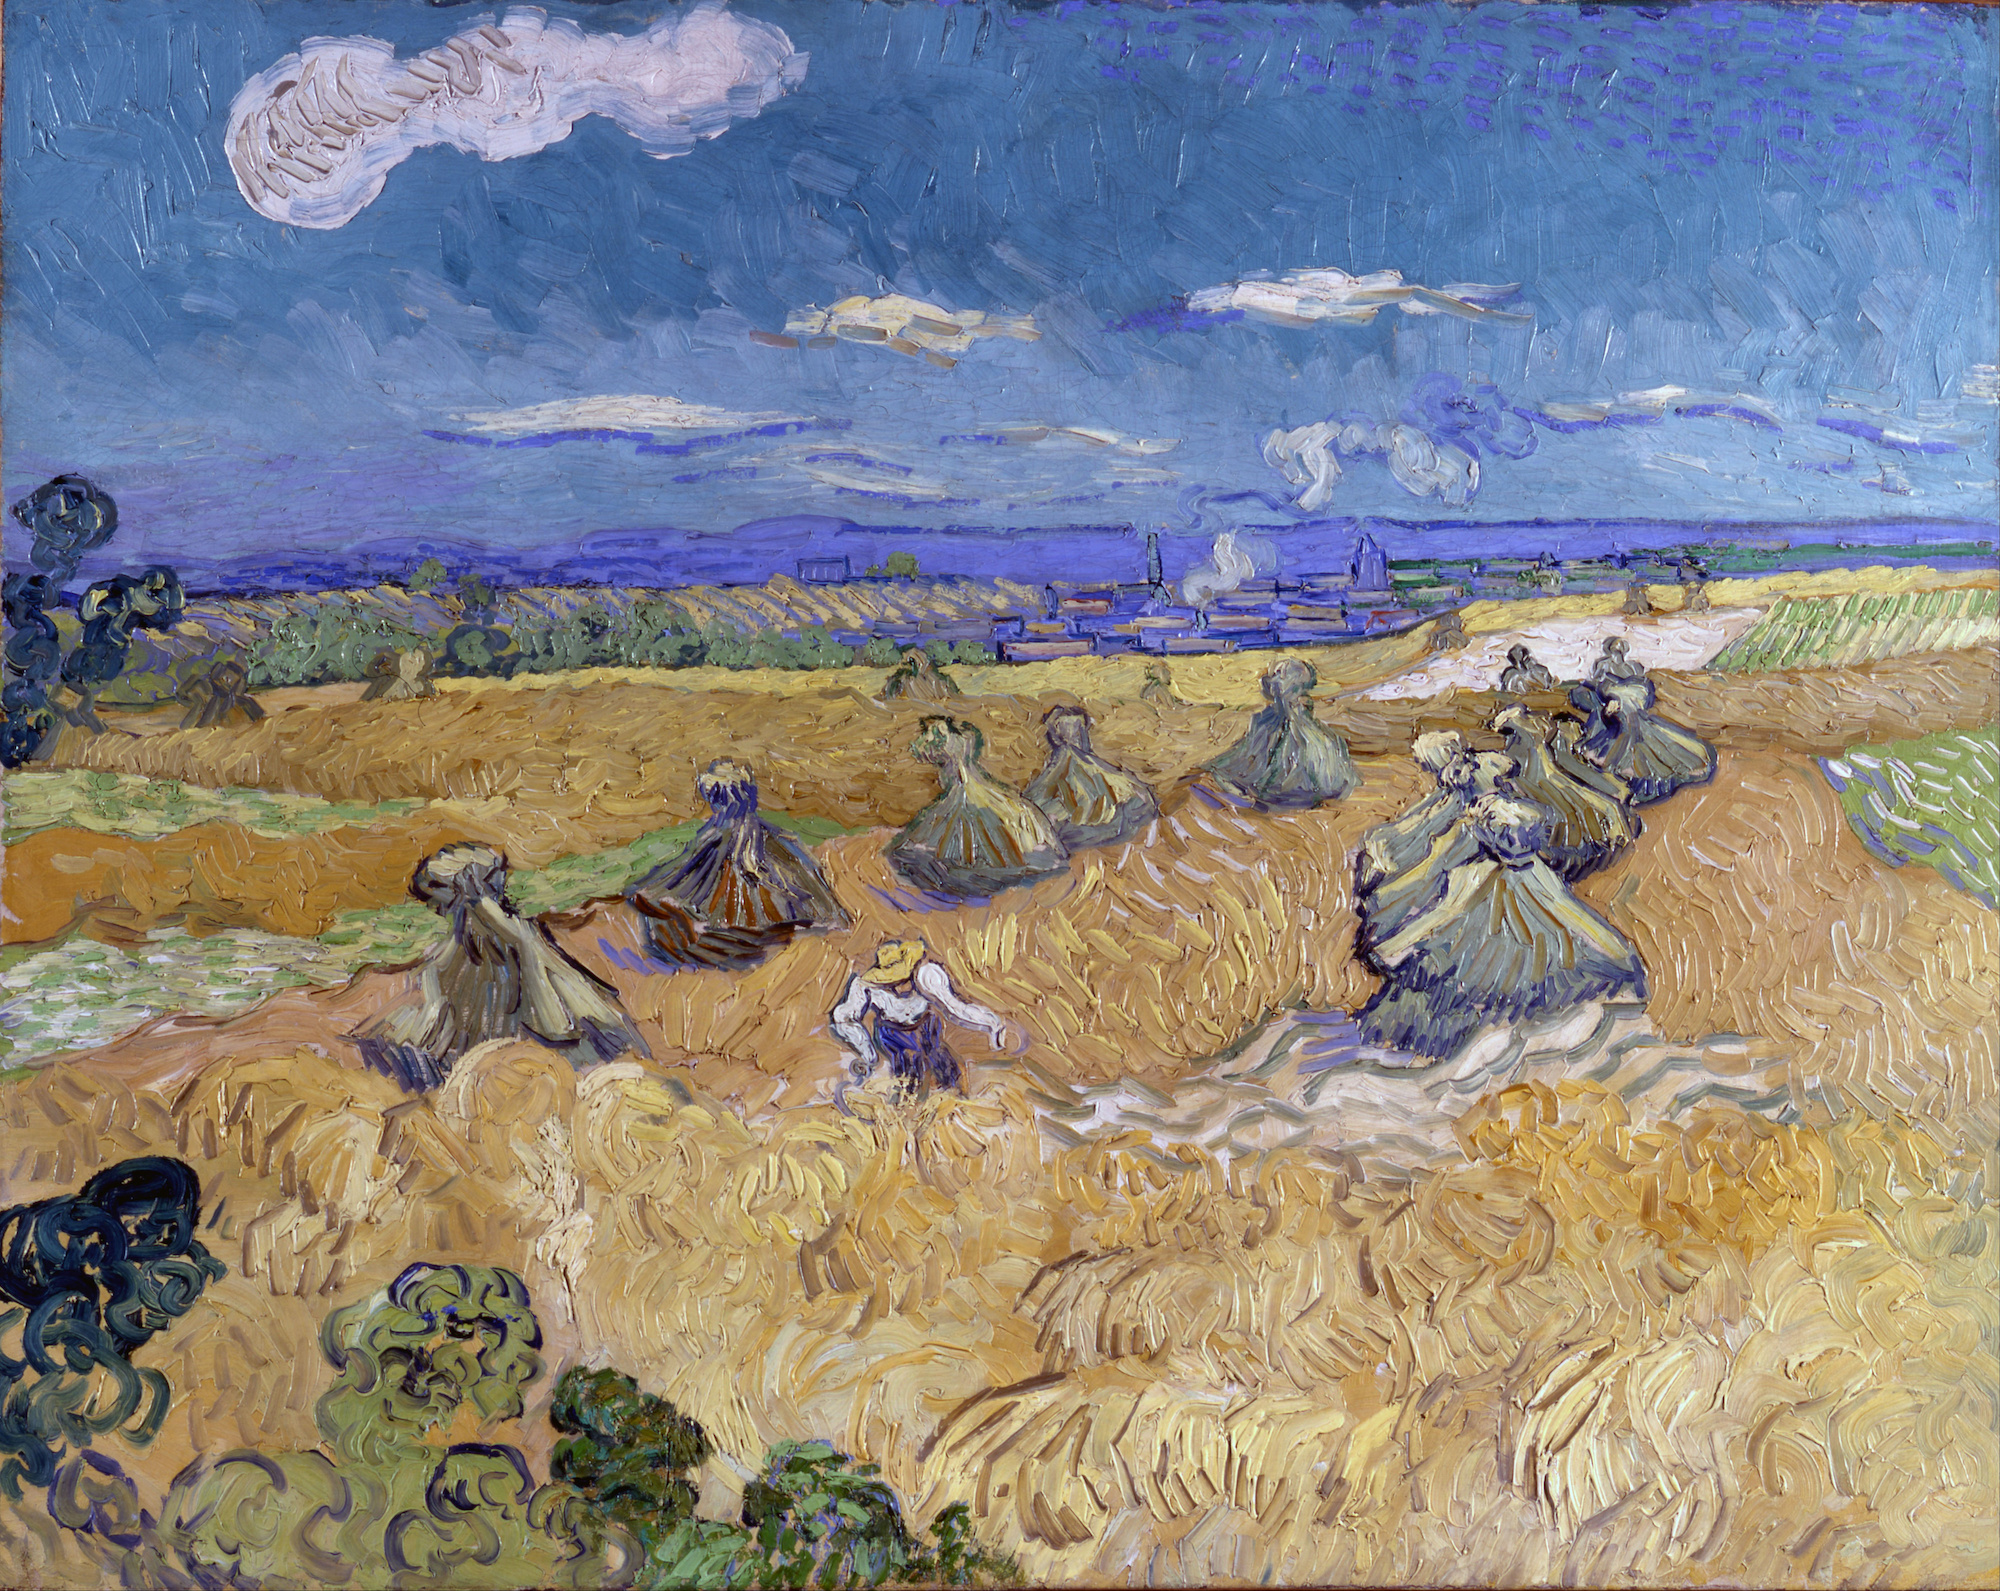 小麦畑と収穫者、オーヴェル by フィンセント・ ファン・ゴッホ - 1890年 - 93.0 x 73.6 cm 